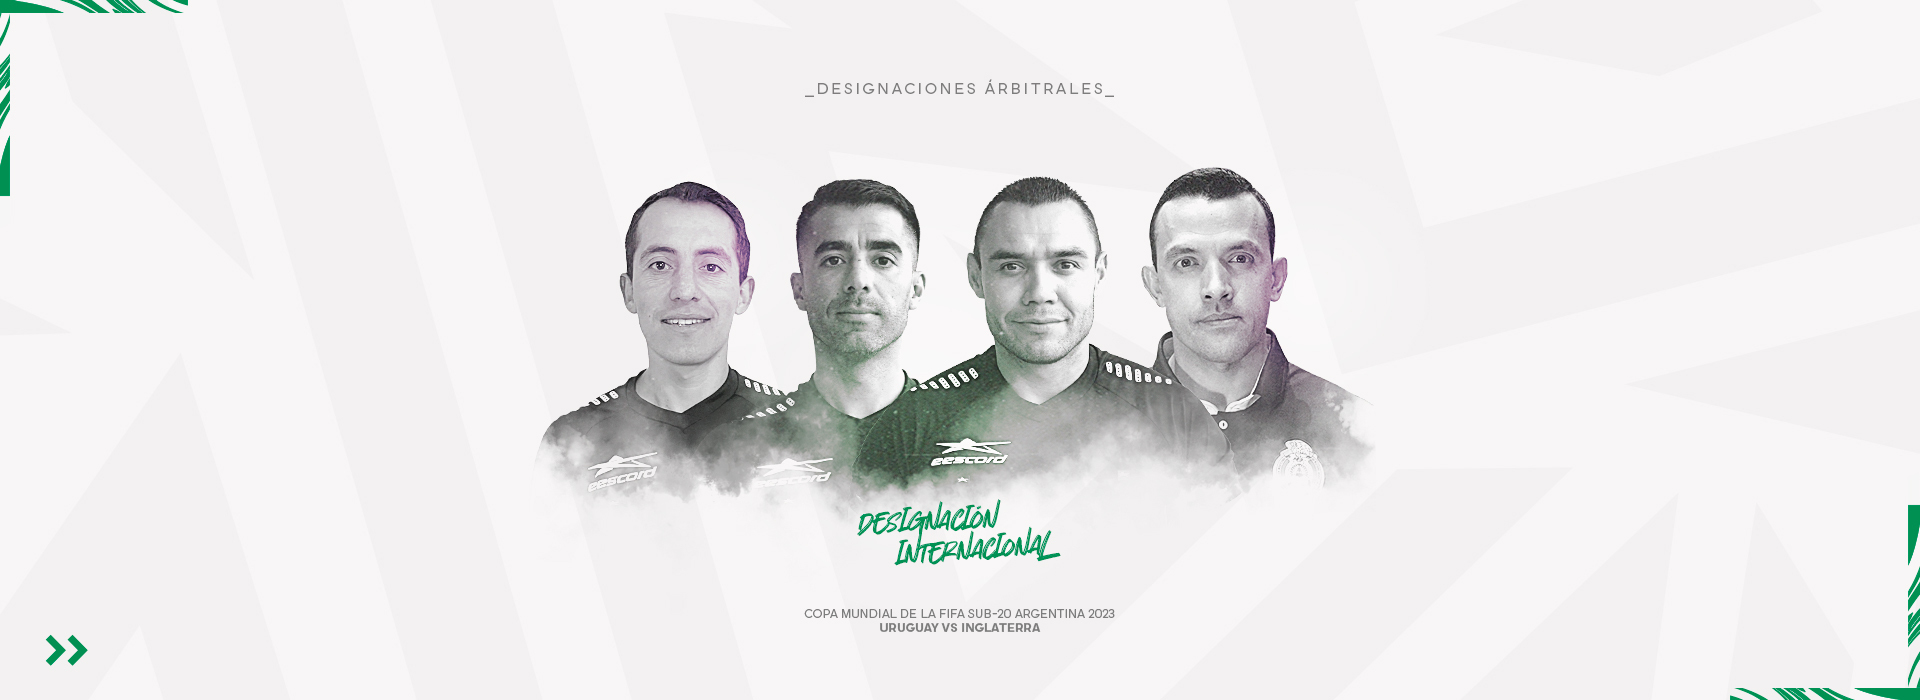 Nueva designación para árbitros mexicanos en la Copa Mundial Sub-20 de la FIFA Argentina 2023. Noticias en tiempo real